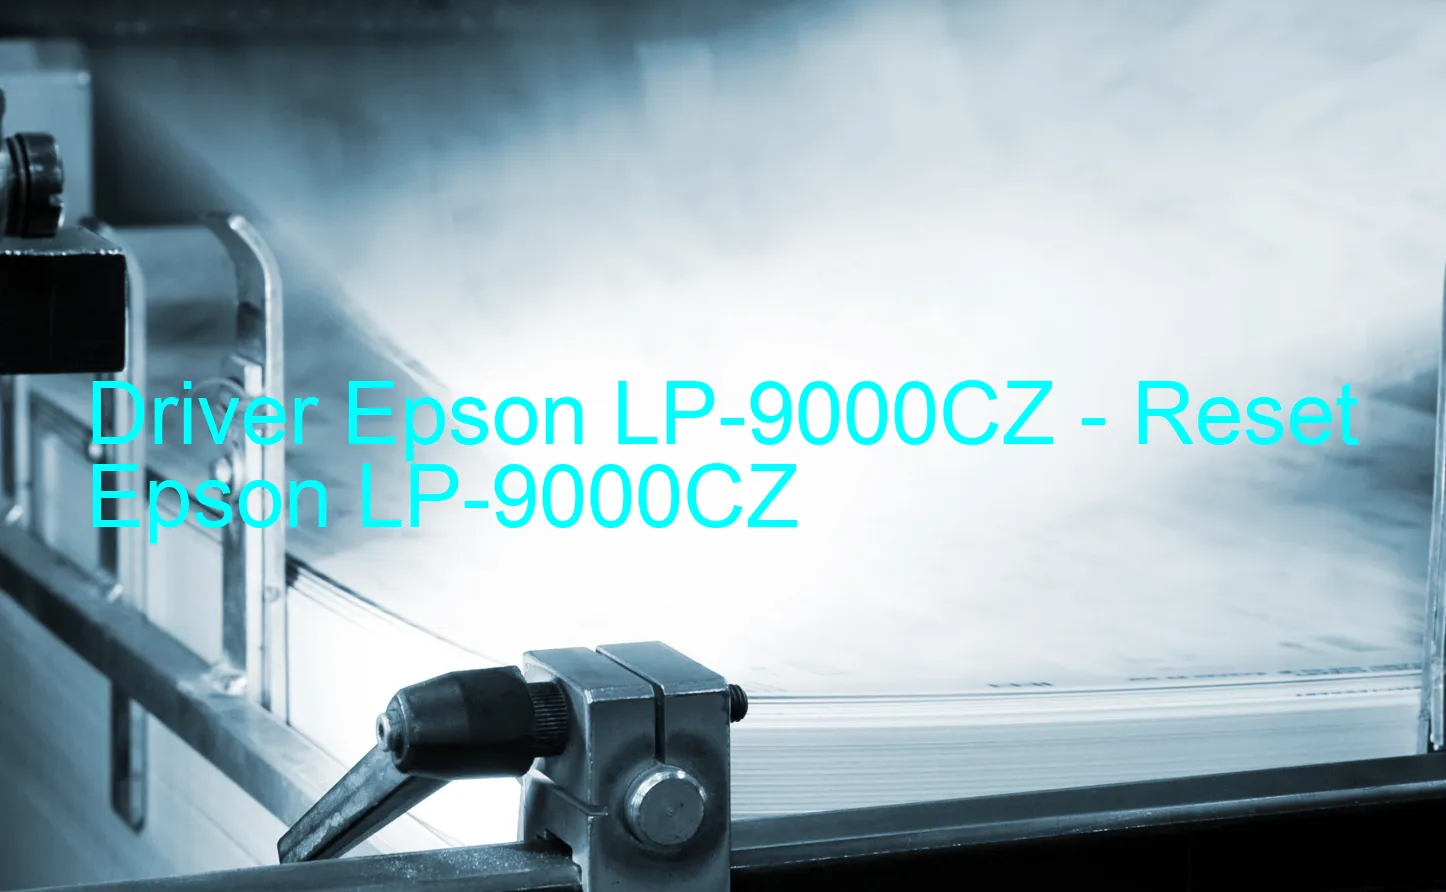 Epson LP-9000CZのドライバー、Epson LP-9000CZのリセットソフトウェア